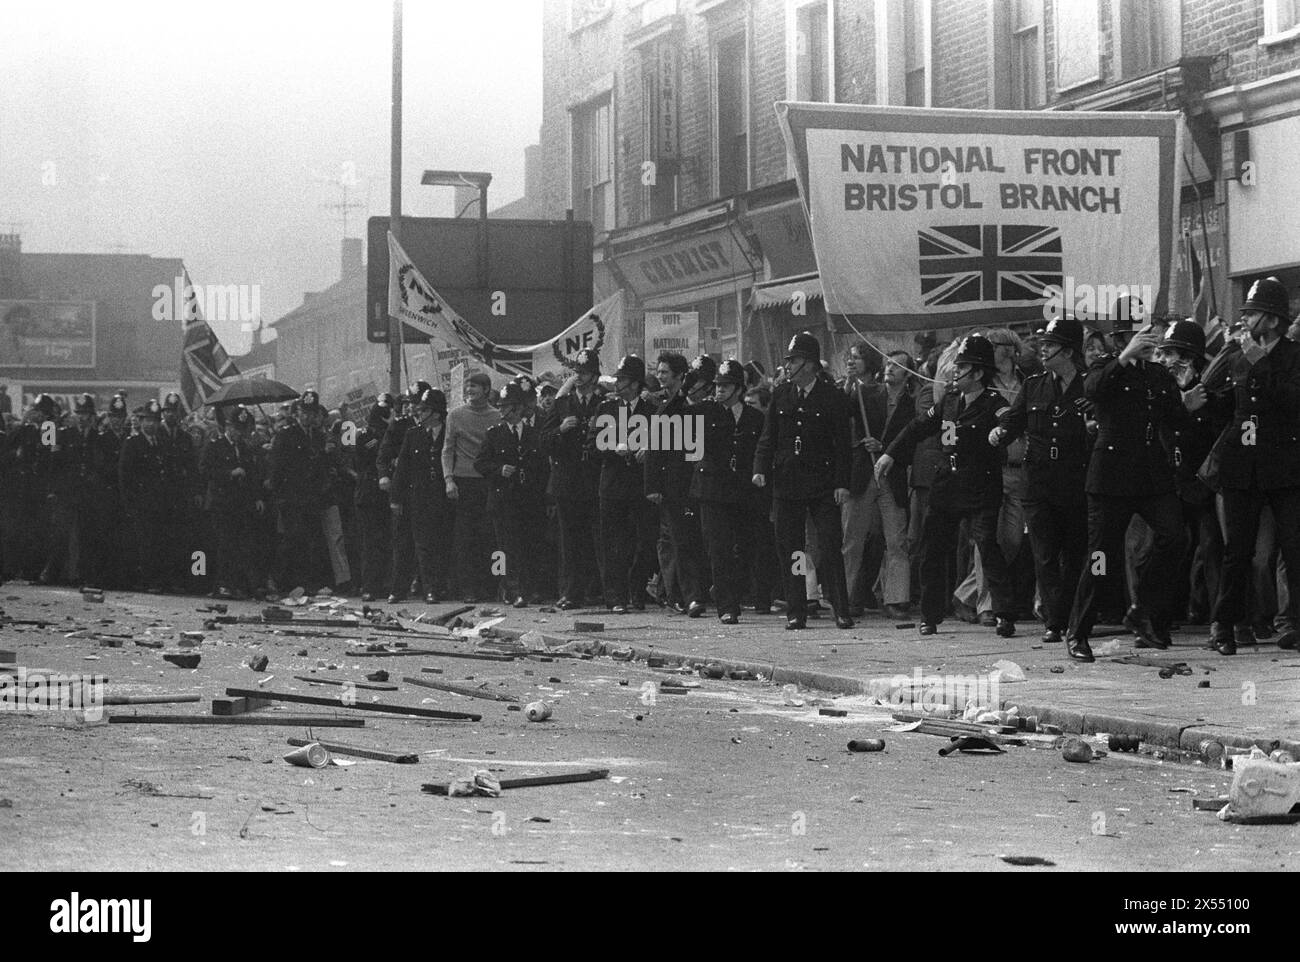 La police protège les membres du Front national lors de la bataille de Lewisham, qui a eu lieu le 13 août 1977. Des missiles jonchent la route lancée sur le Front national par des manifestants anti-NF. New Cross, South London, Angleterre 1970s UK HOMER SYKES Banque D'Images